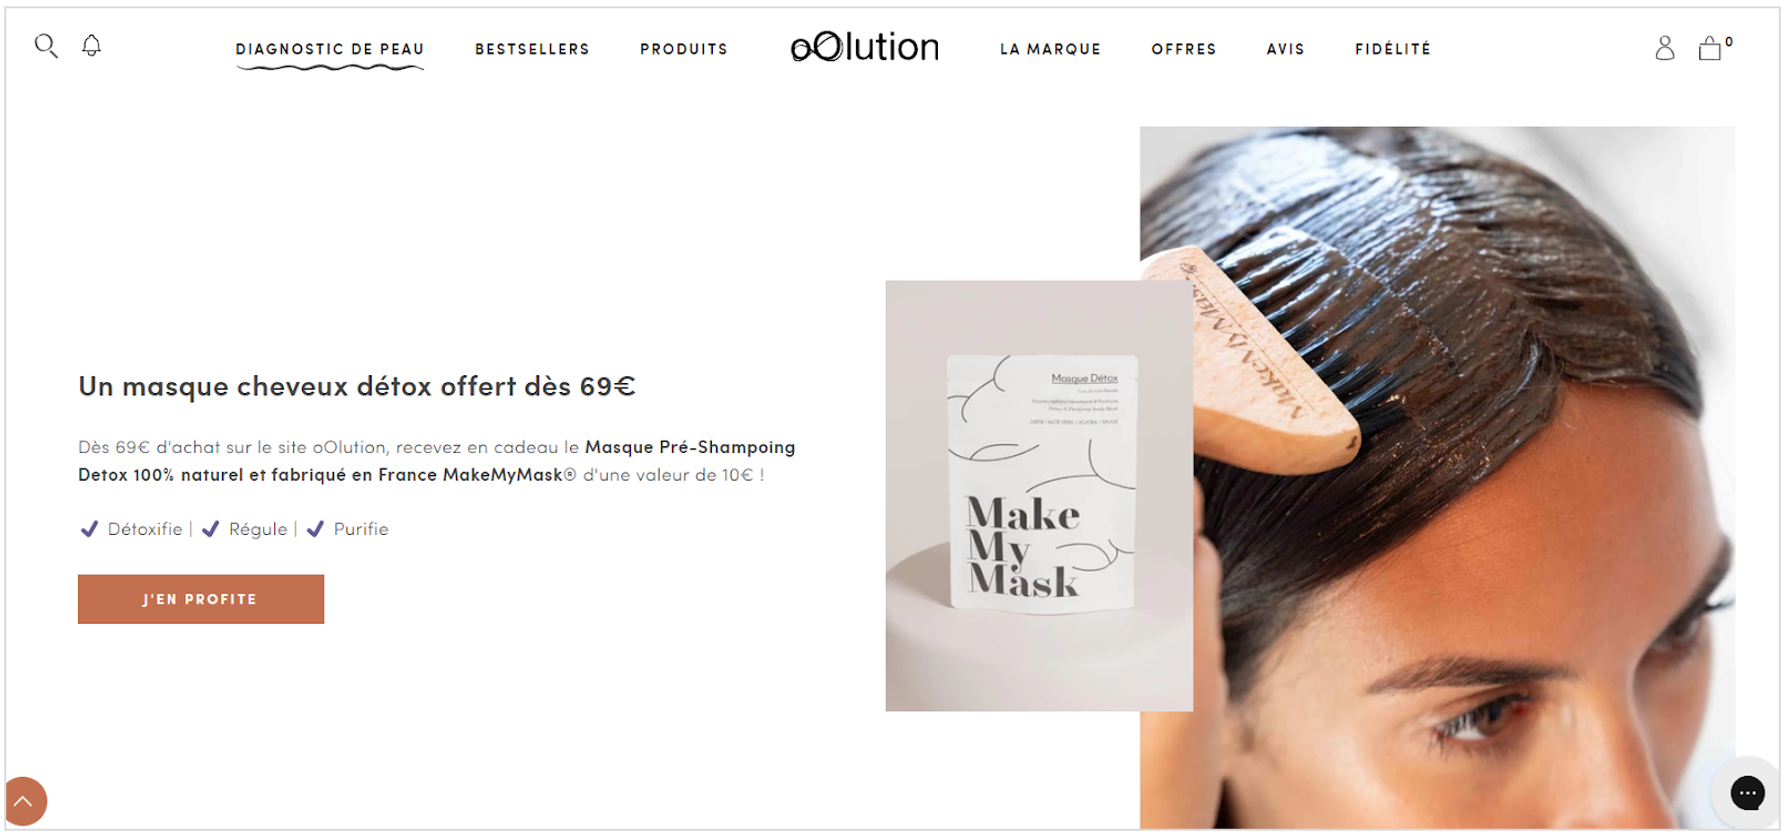 oOlution offre un masque cheveux détox à partir de 69 € d’achat